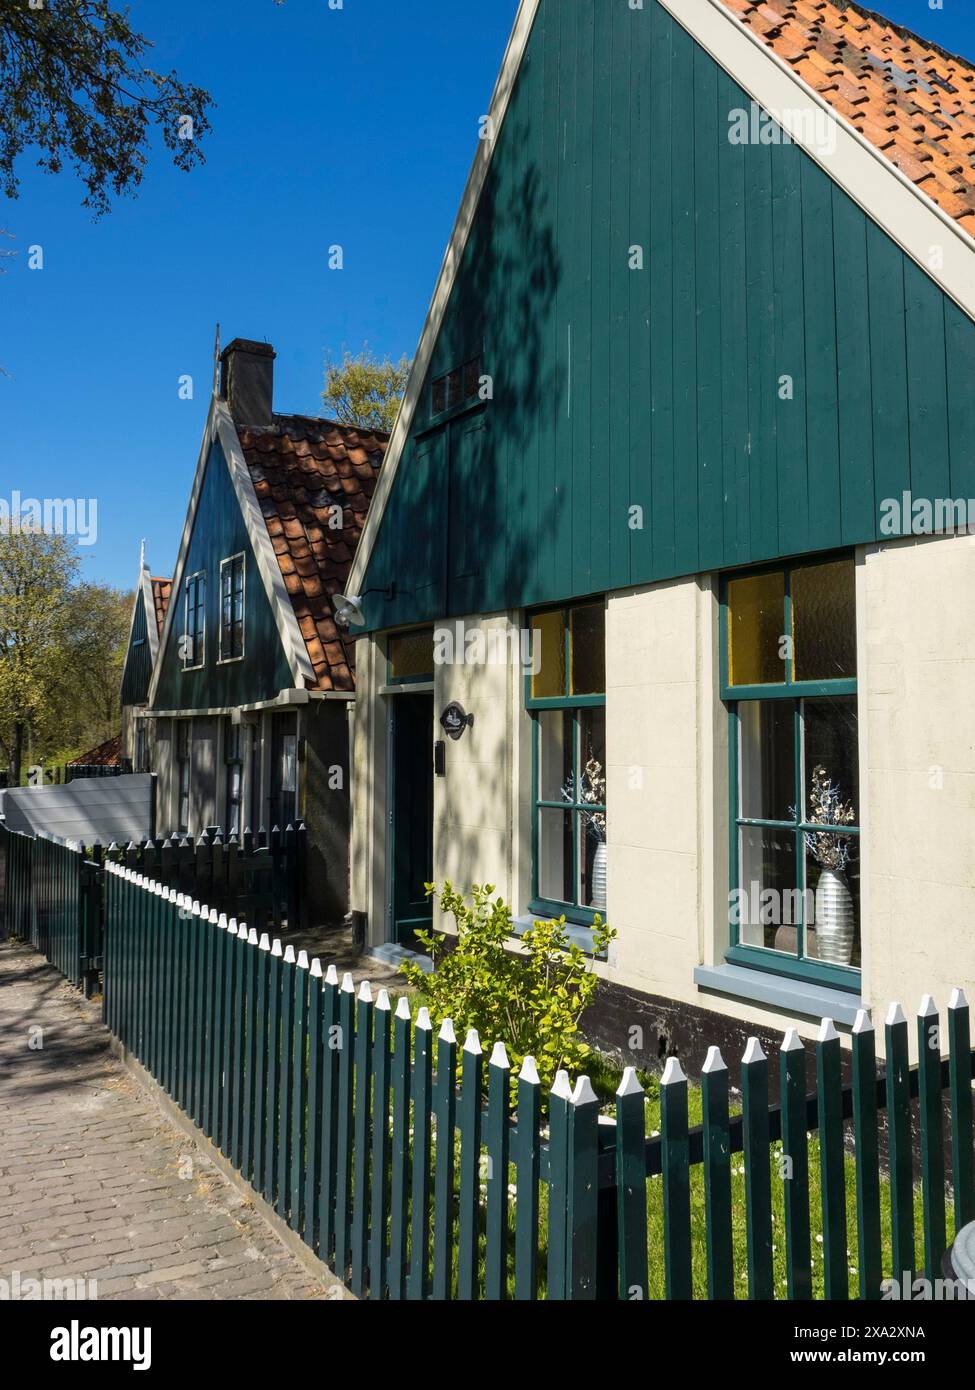 Maisons vertes traditionnelles avec clôtures blanches le long d'une rue dans un village ensoleillé, Enkhuizen, Nirderlande Banque D'Images